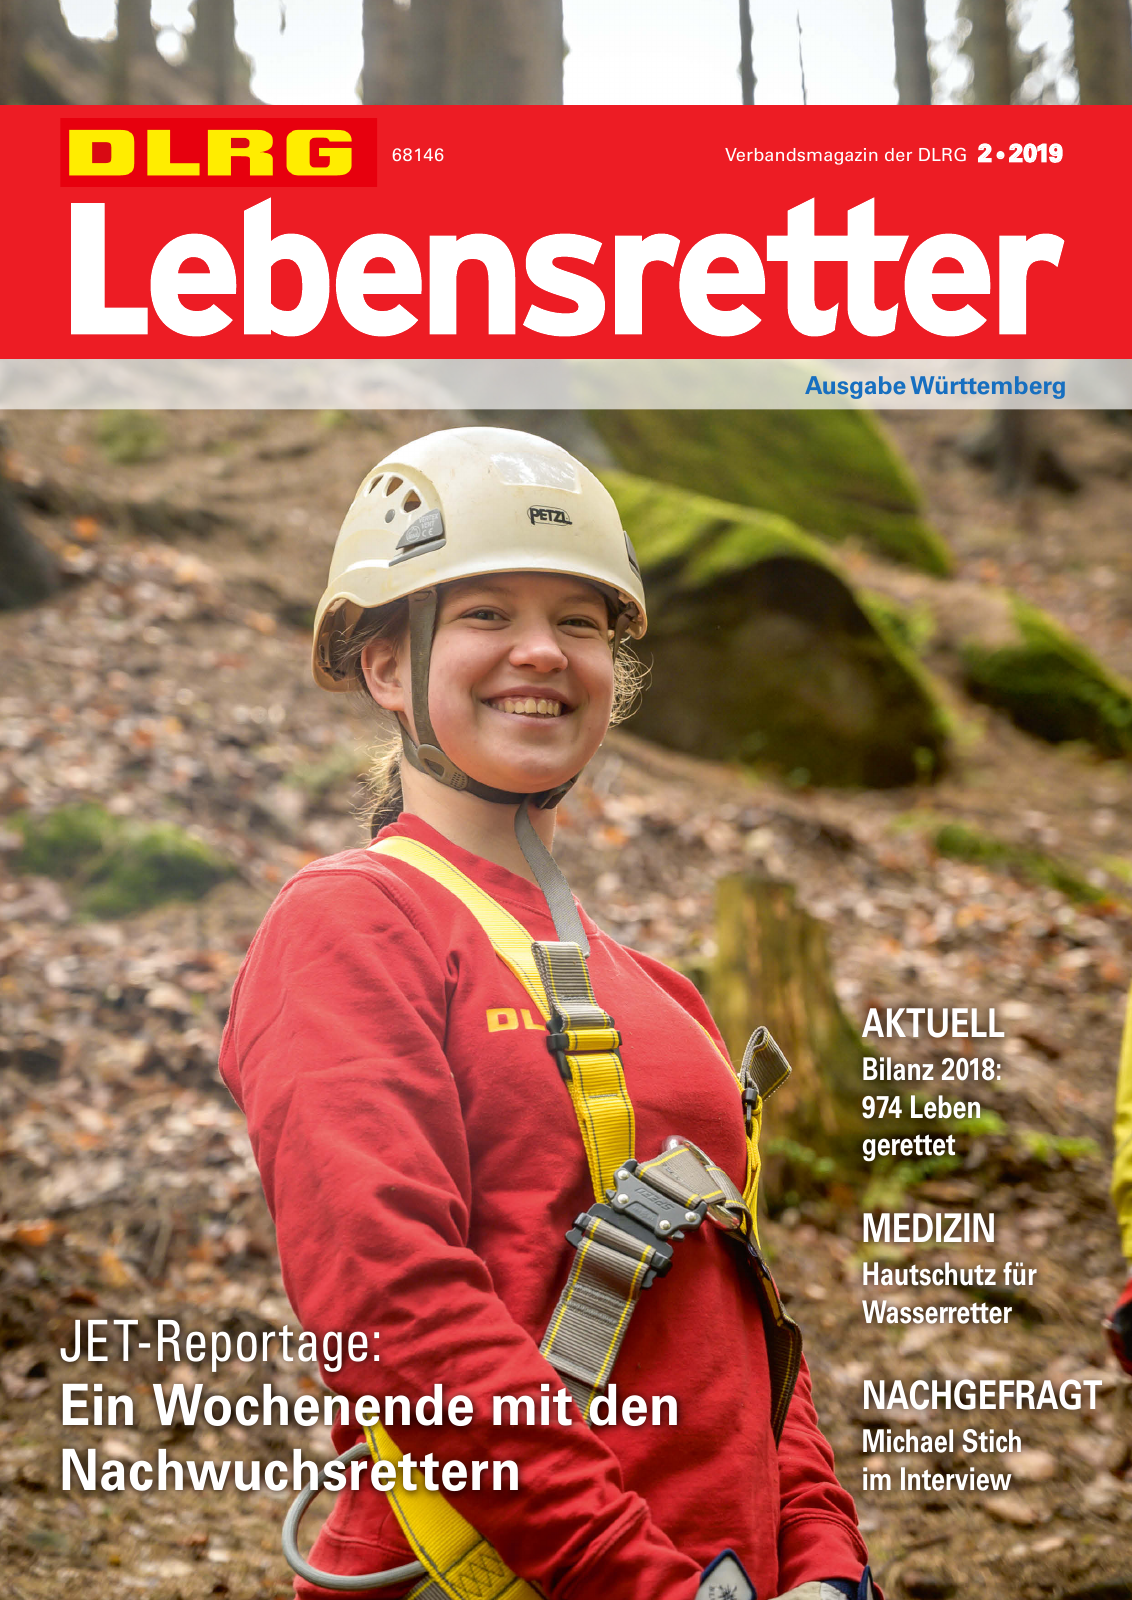 Vorschau Lebensretter 2/2019 - Württemberg Regionalausgabe Seite 1